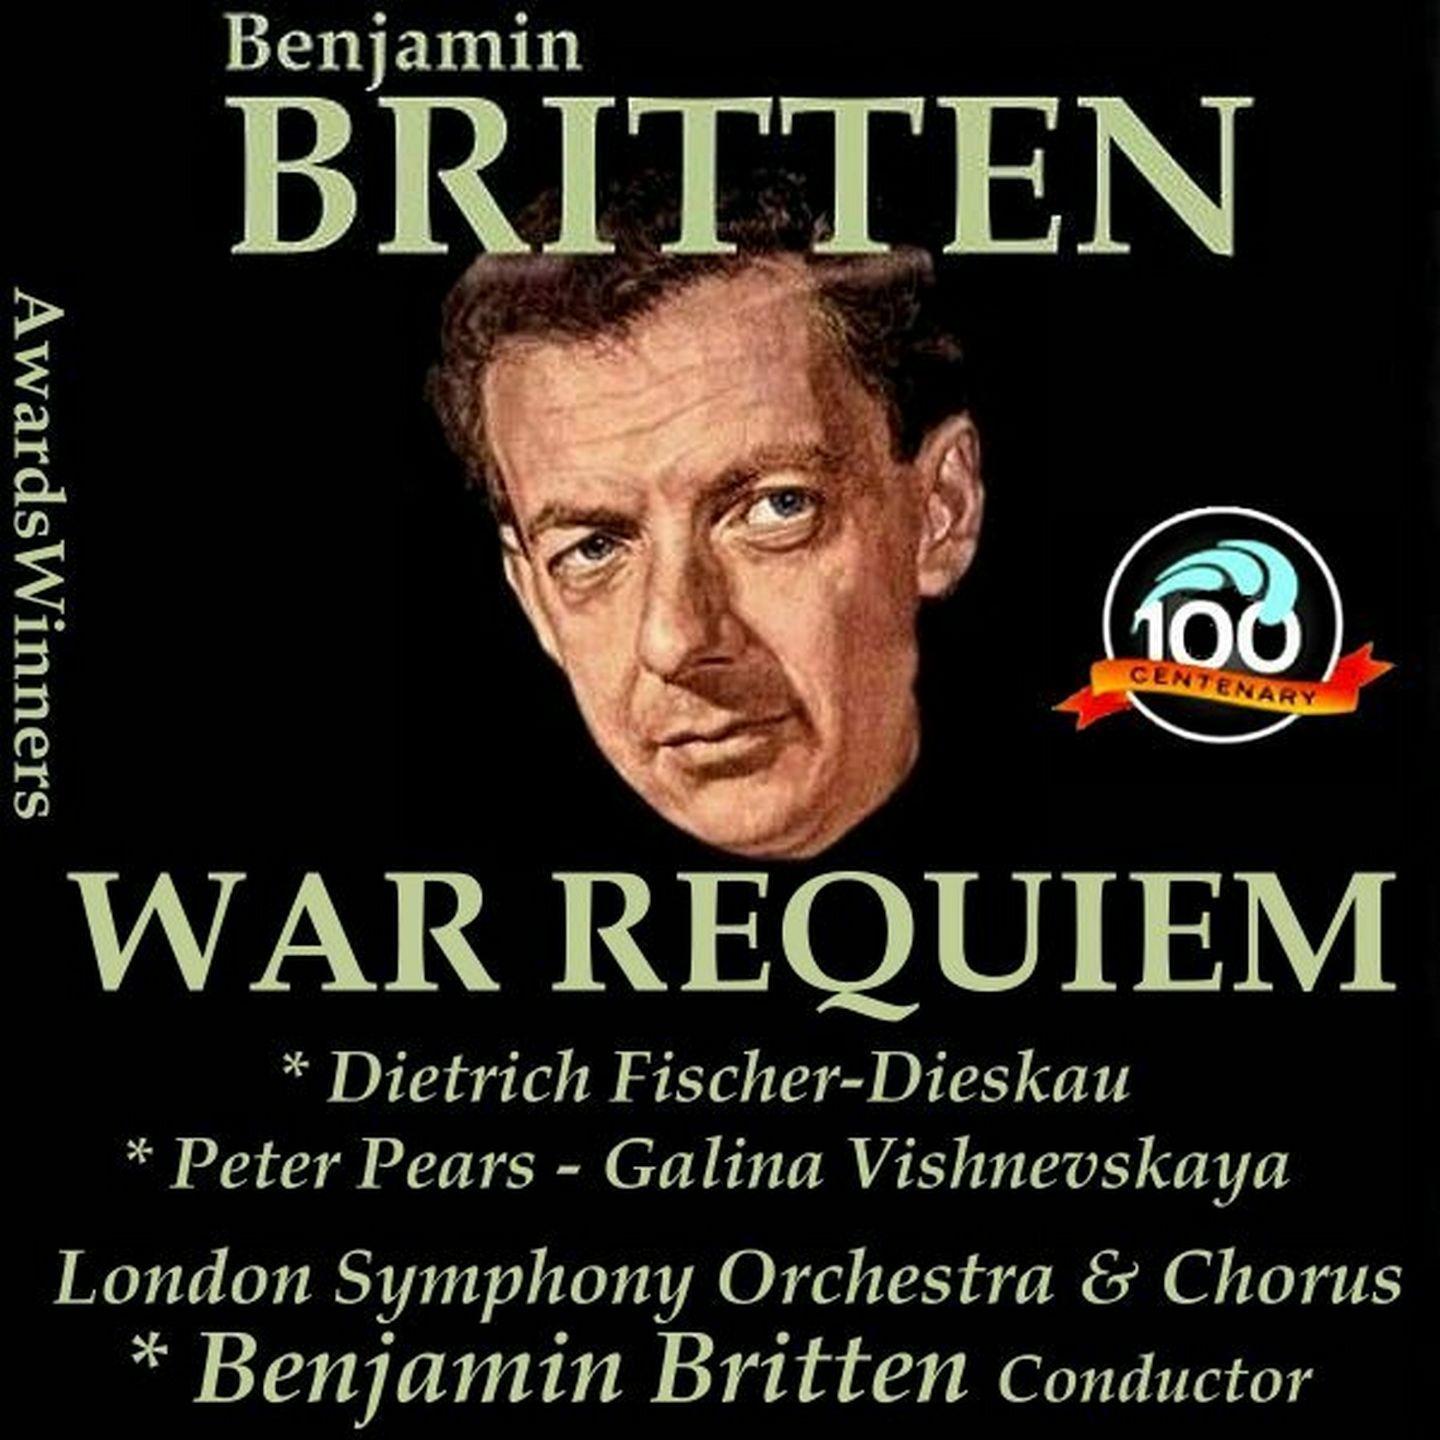 War Requiem, Op. 66: I. Requiem aeternam